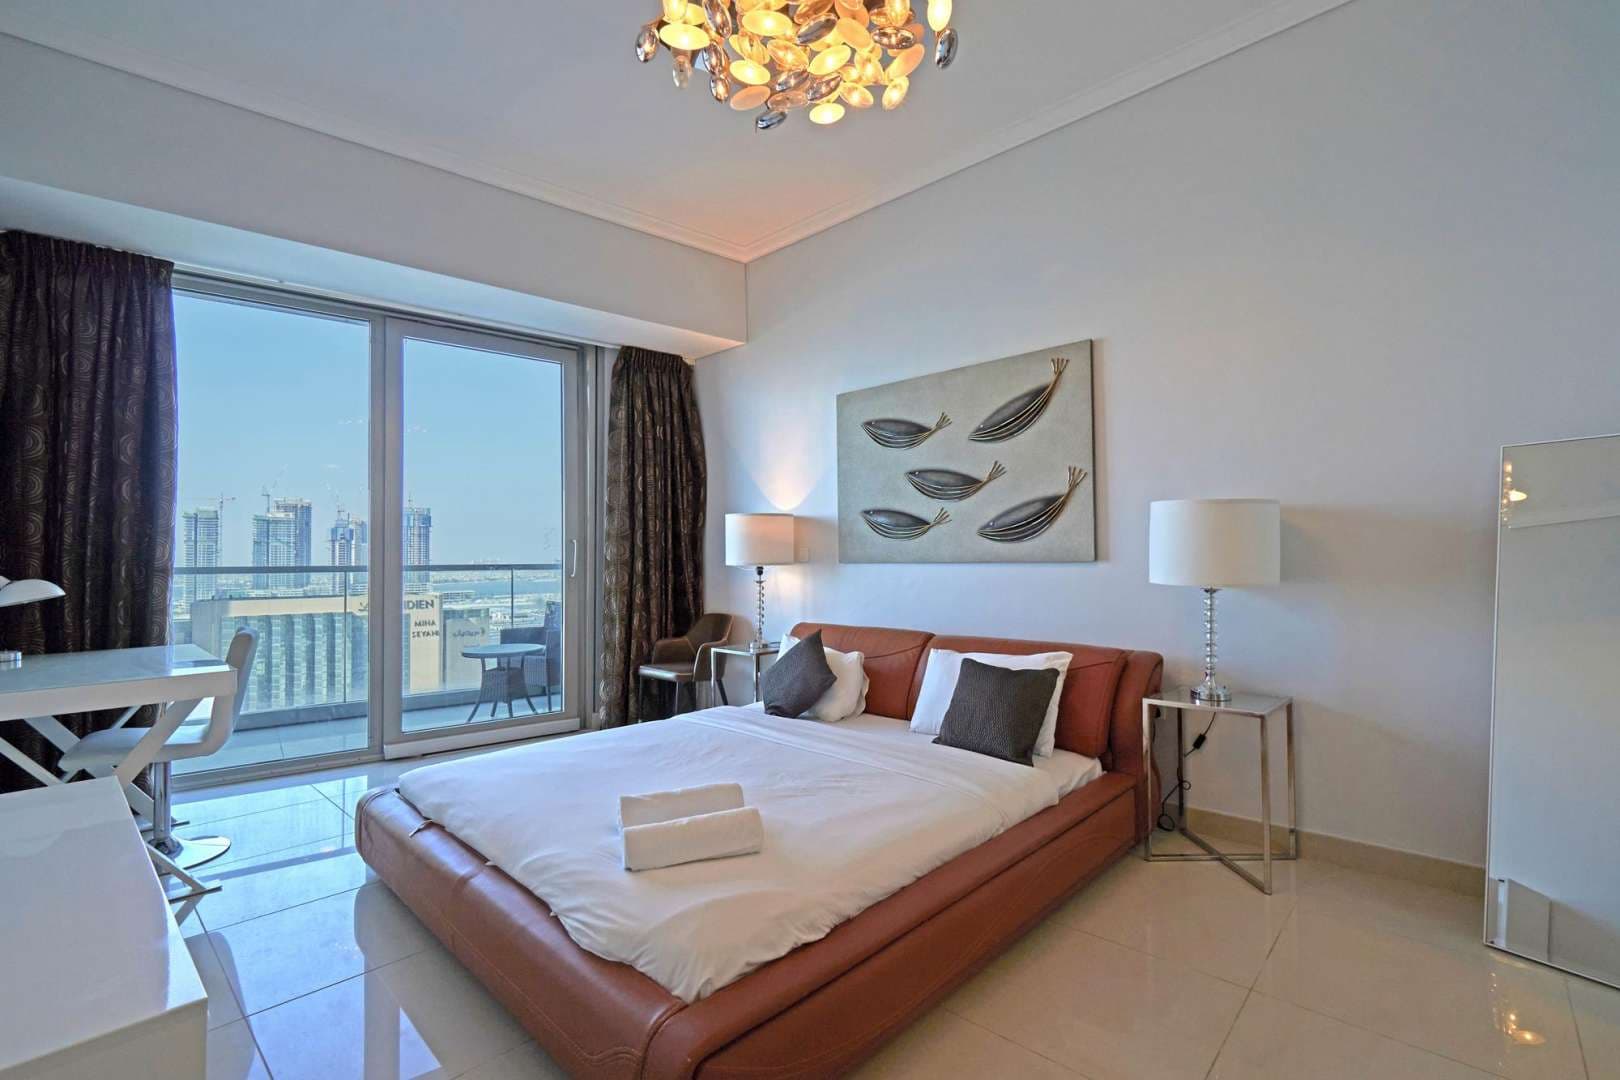 3 Bedroom Apartment For Sale Ocean Heights Lp05535 2632ae485aa7c000.jpg